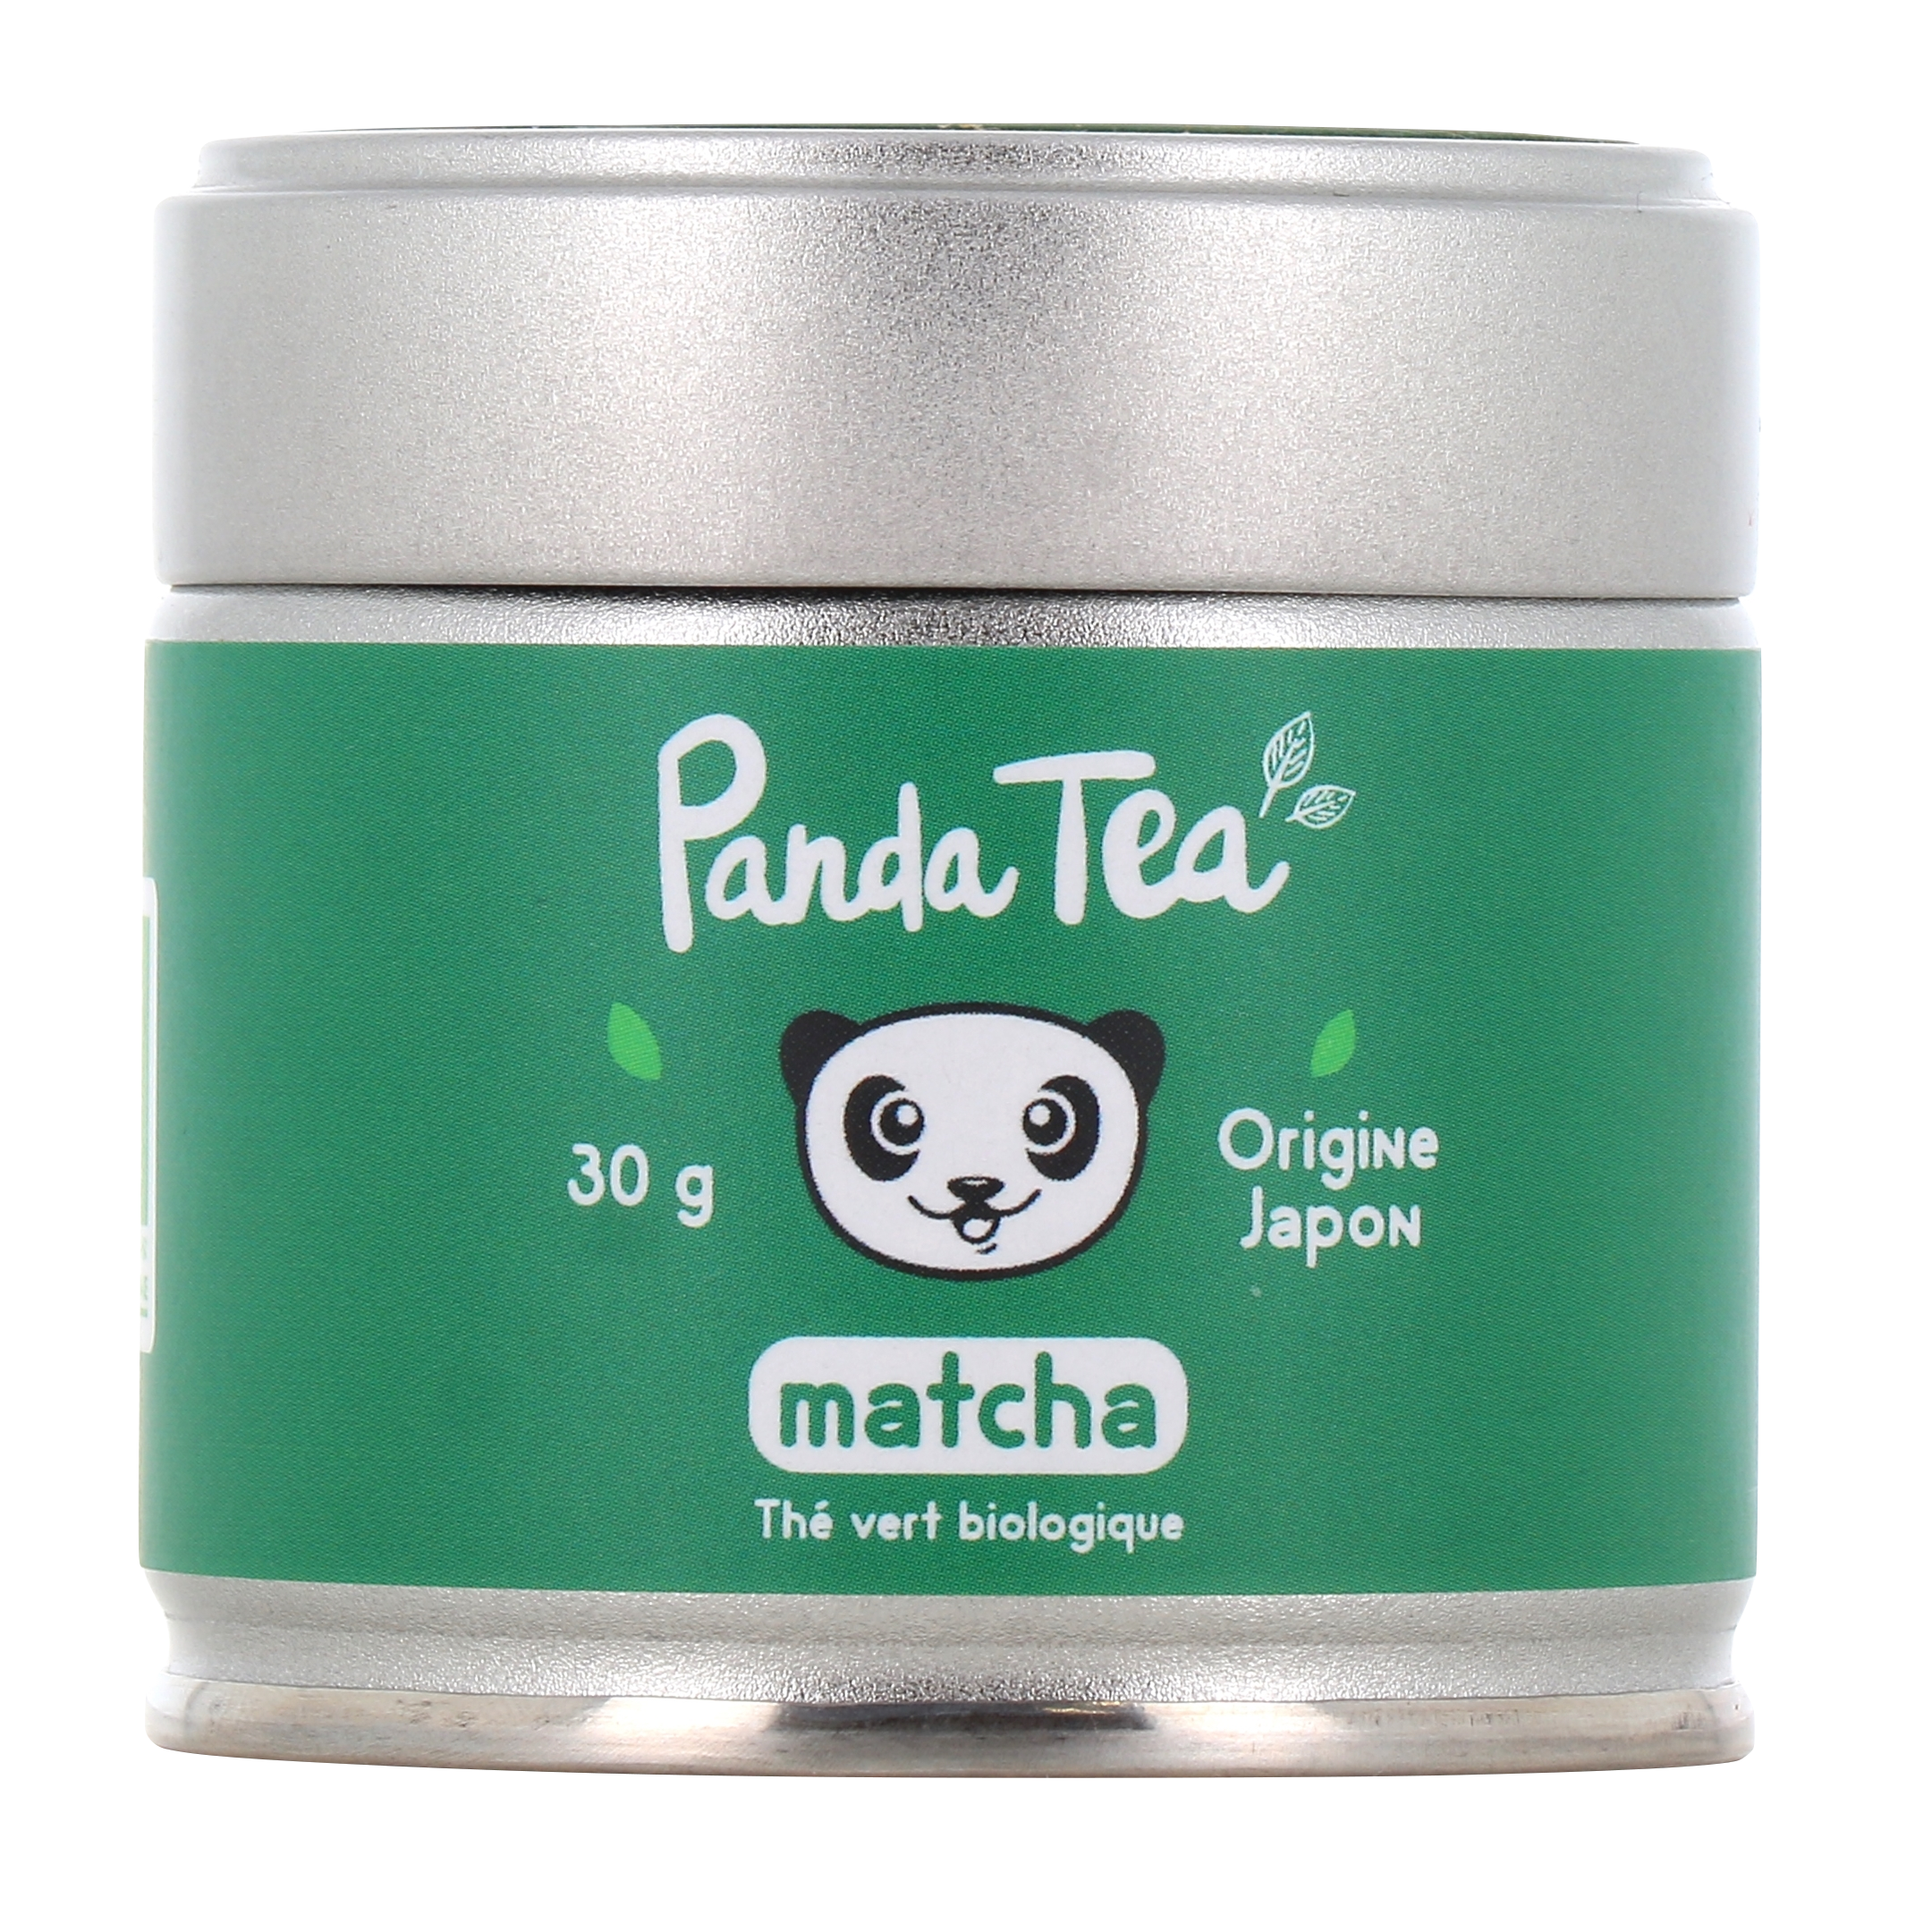 Panda Tea matcha bio poudre - Thé vert biologique origine Japon